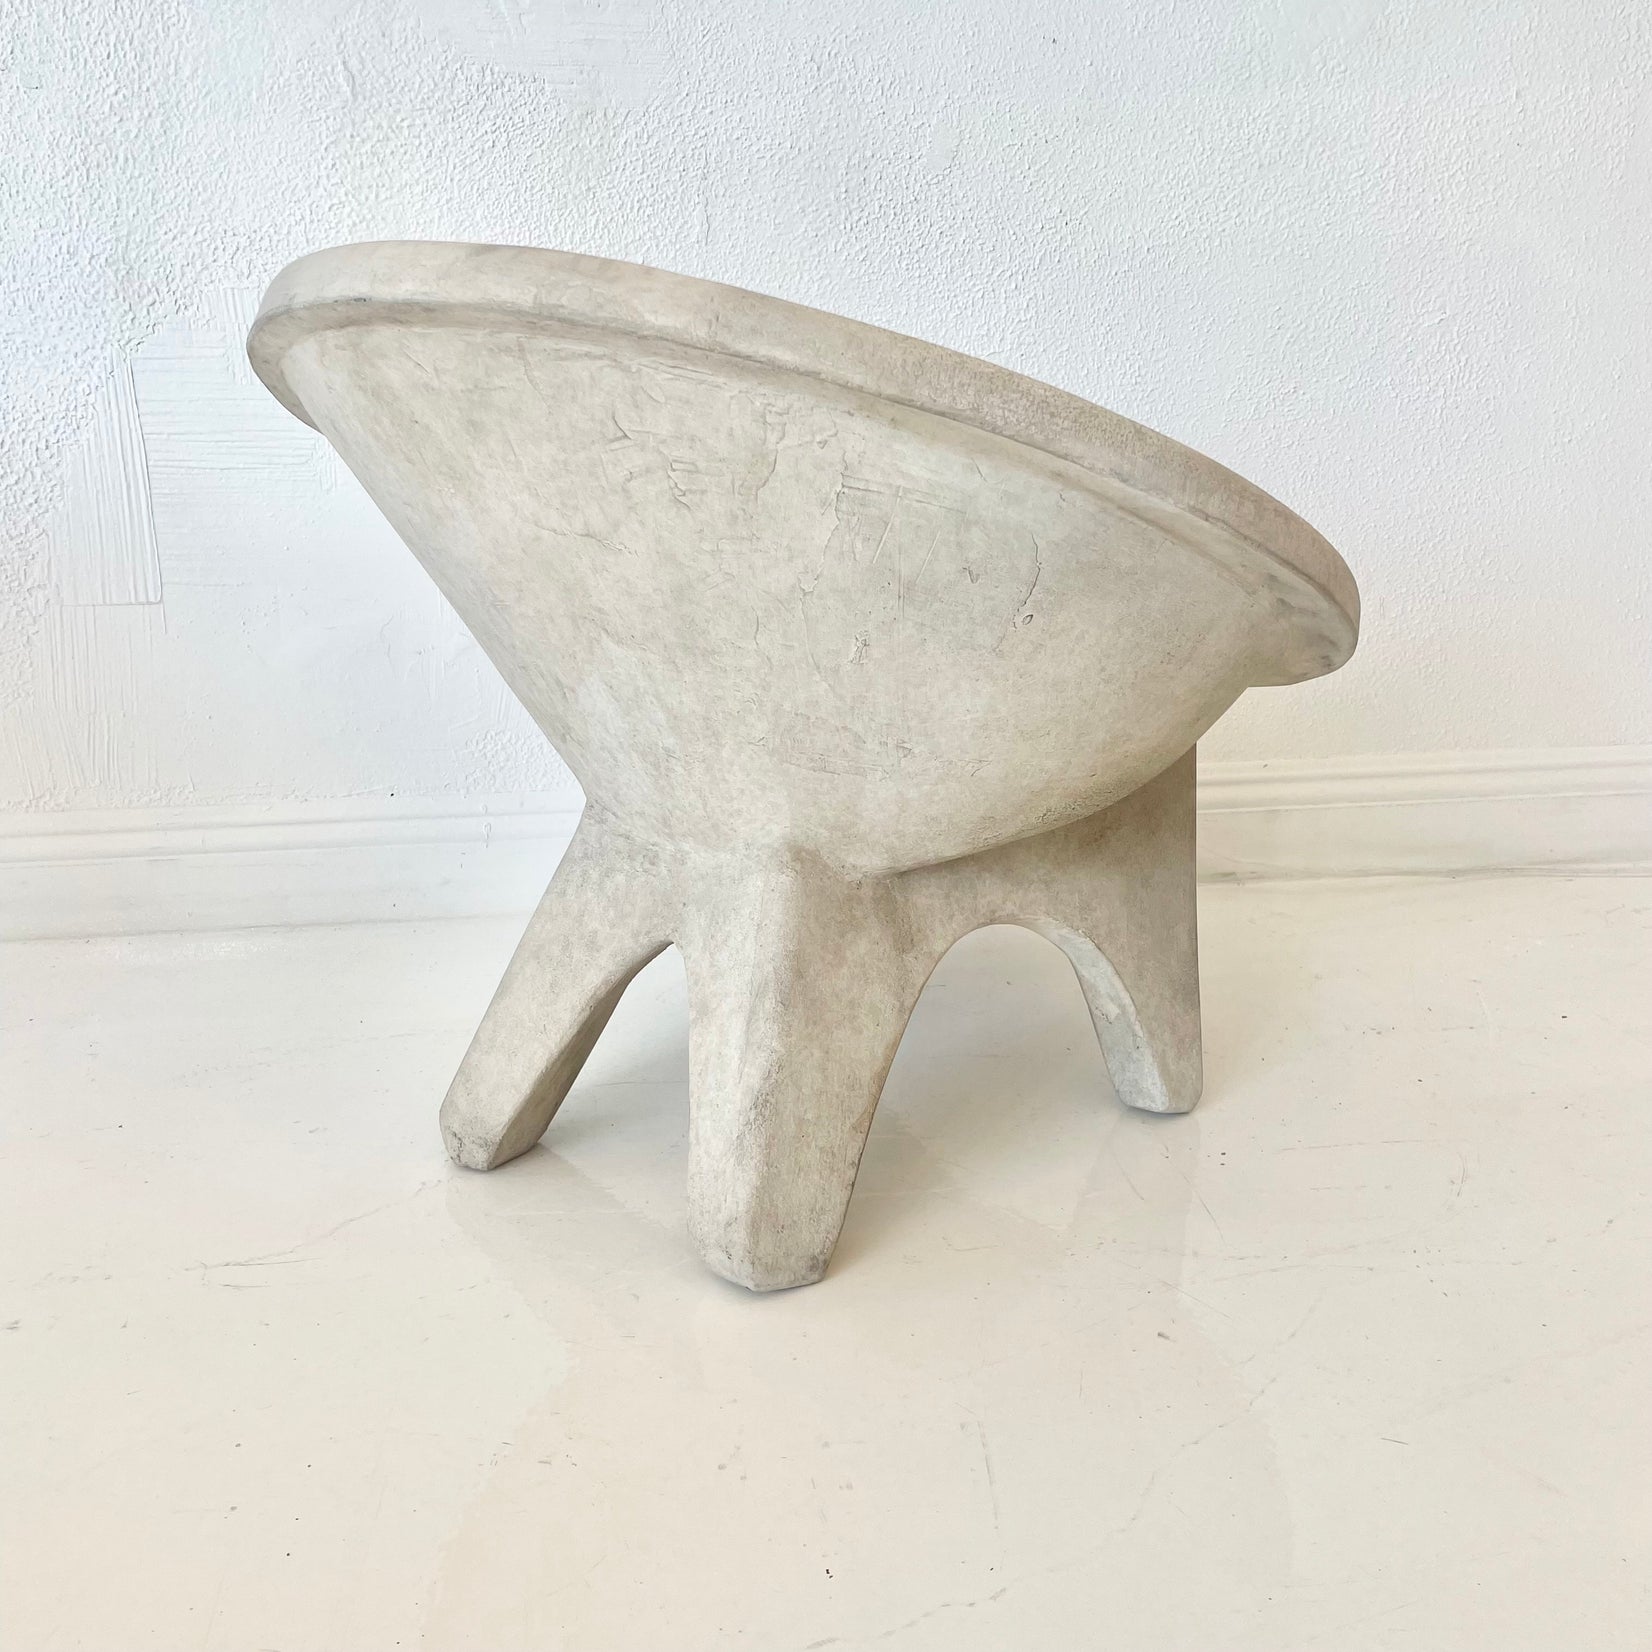 Sculptural Concrete Chair by Merit, Los Angeles